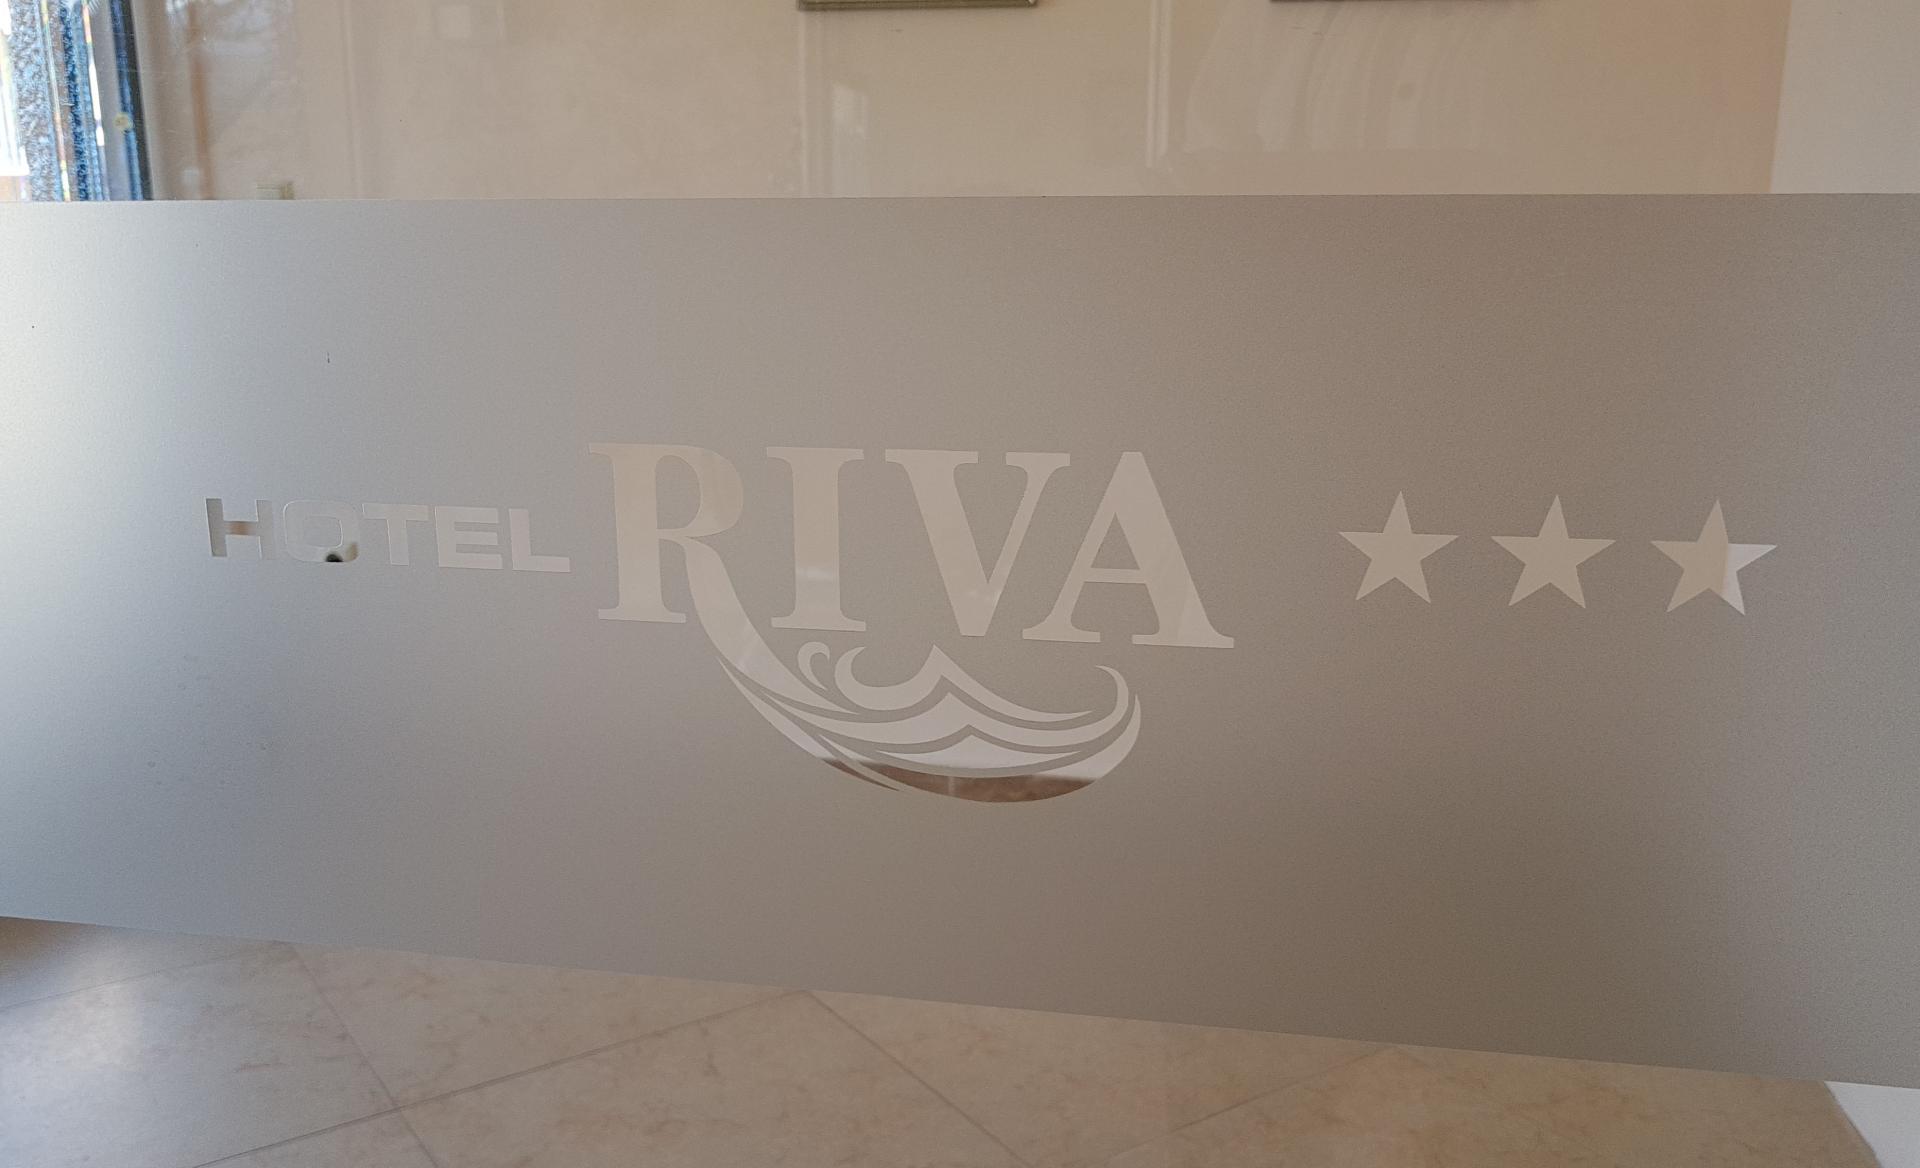 Hotel Riva - Bułgaria